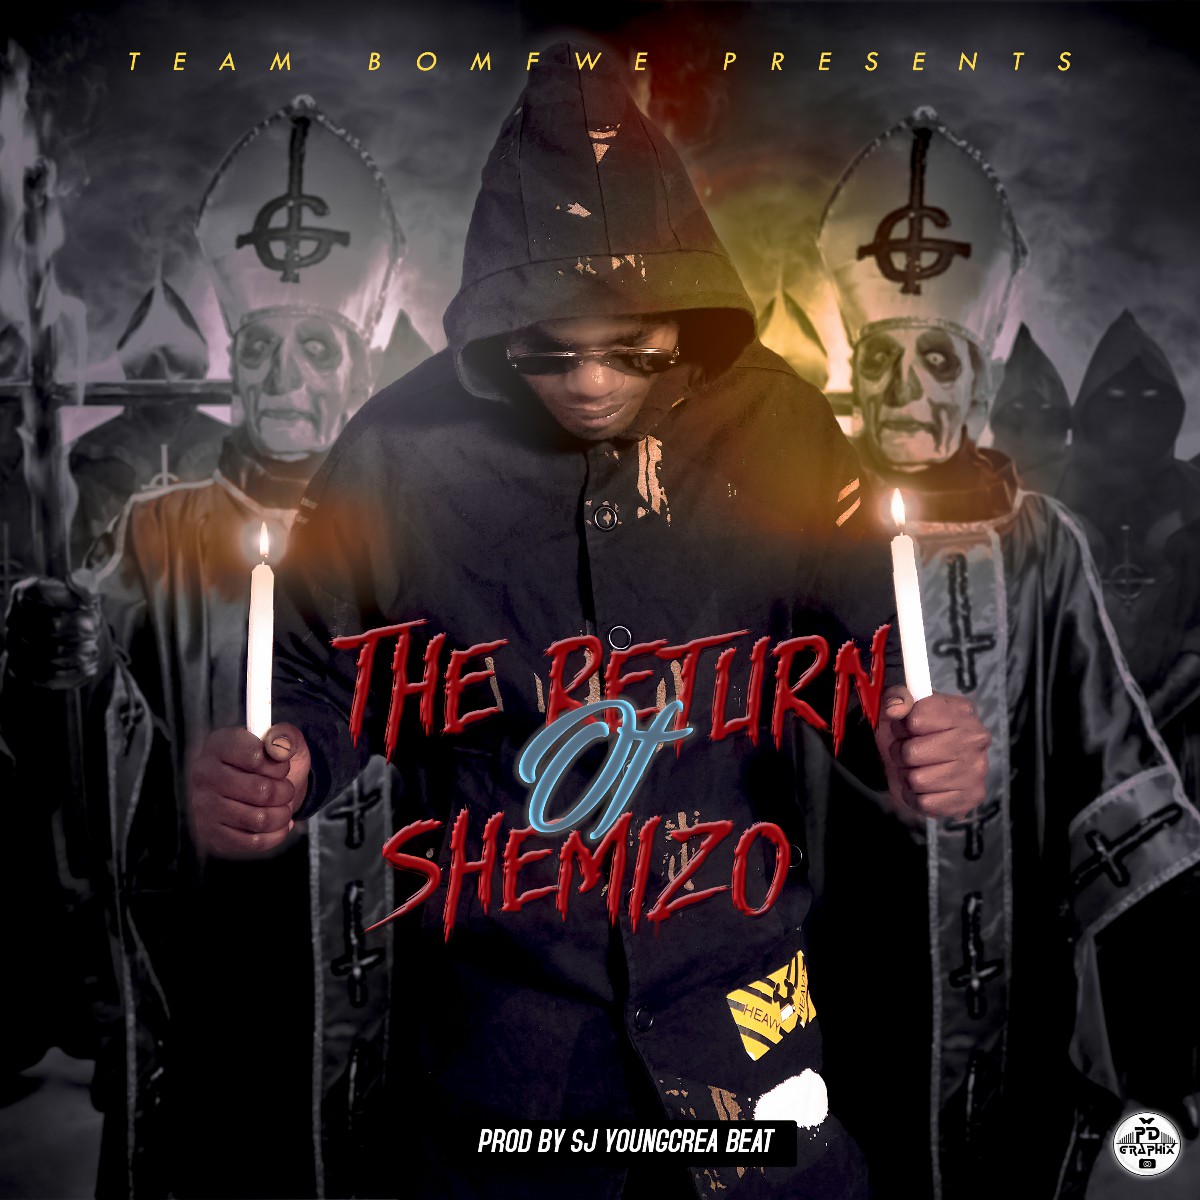 Shemizo - The Return Of Shemizo